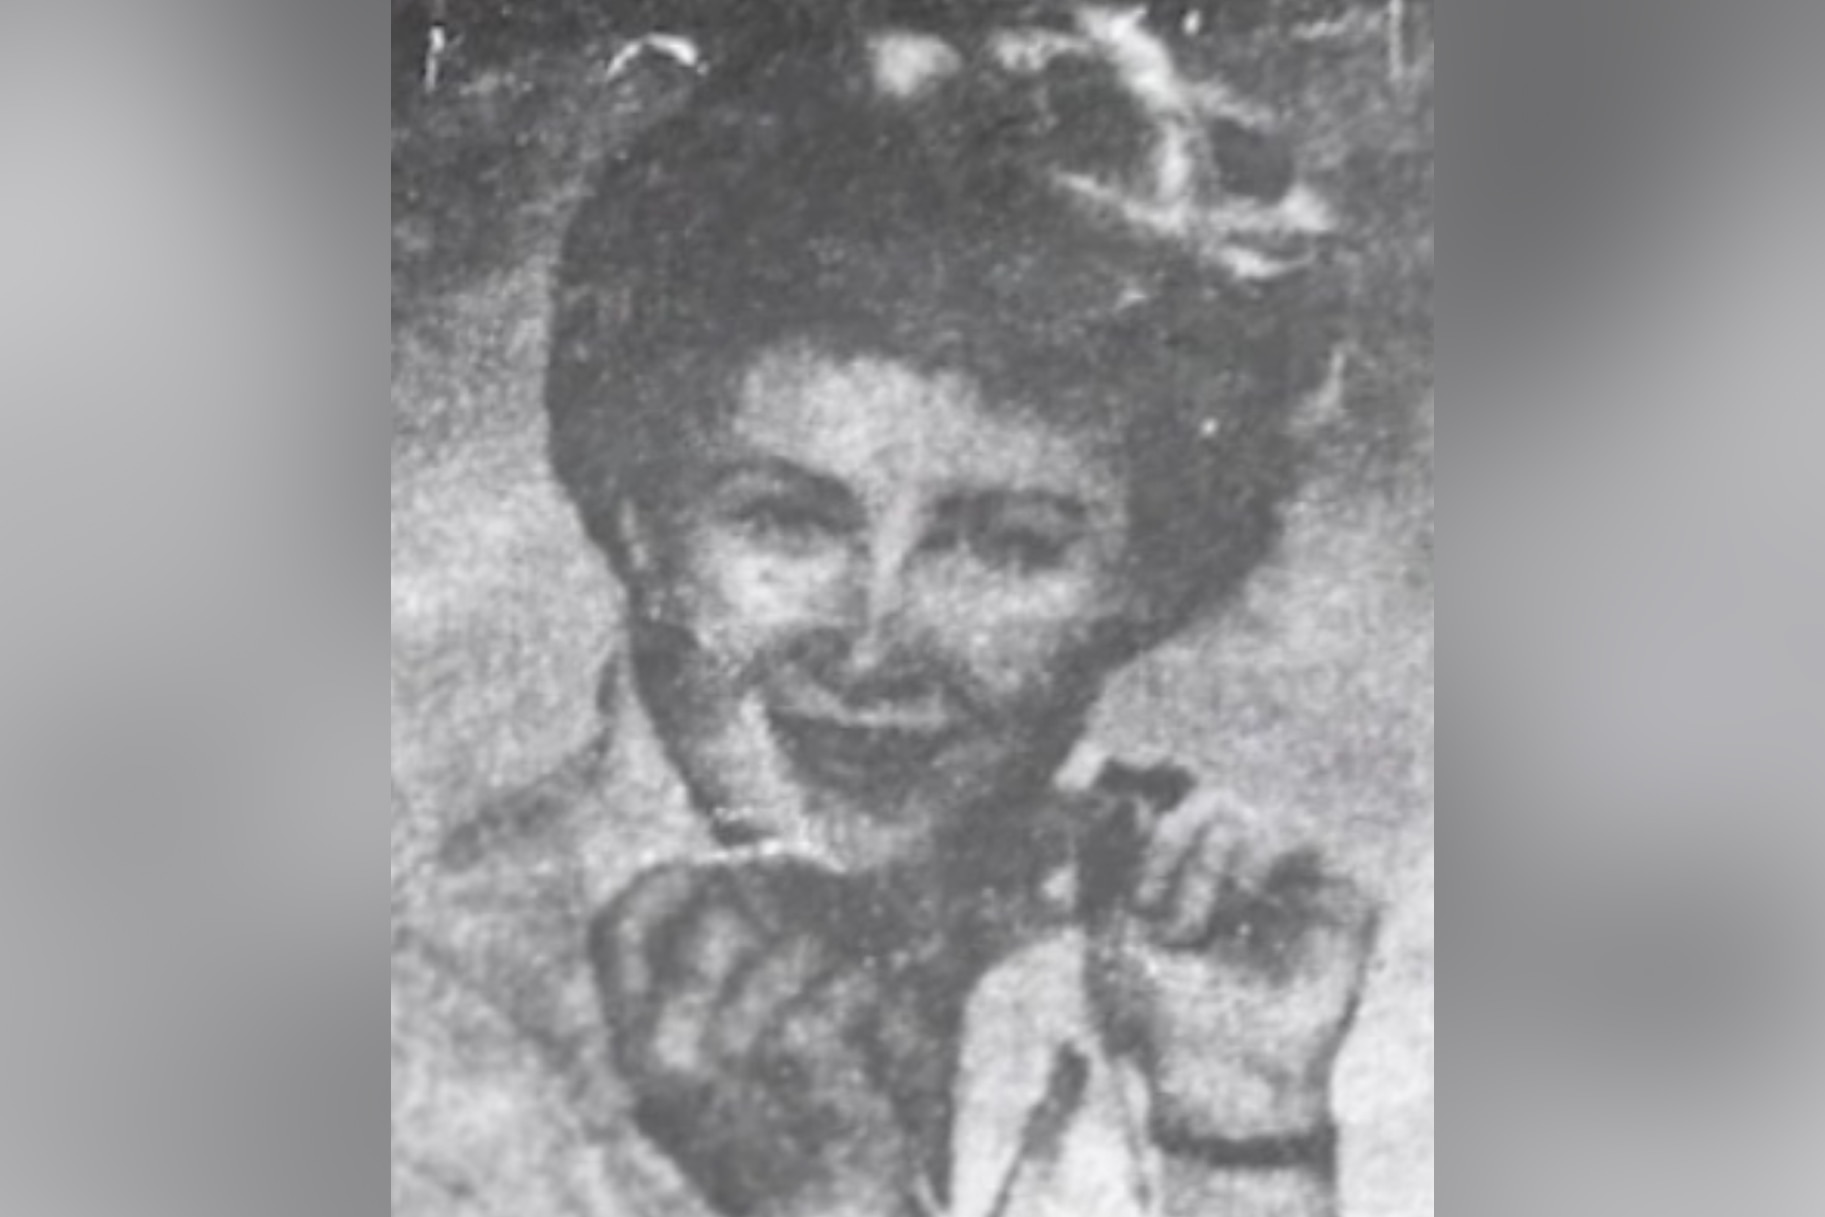 "Christmas Tree Lady" Jane Doe has been identified as Joyce Marilyn Meyer